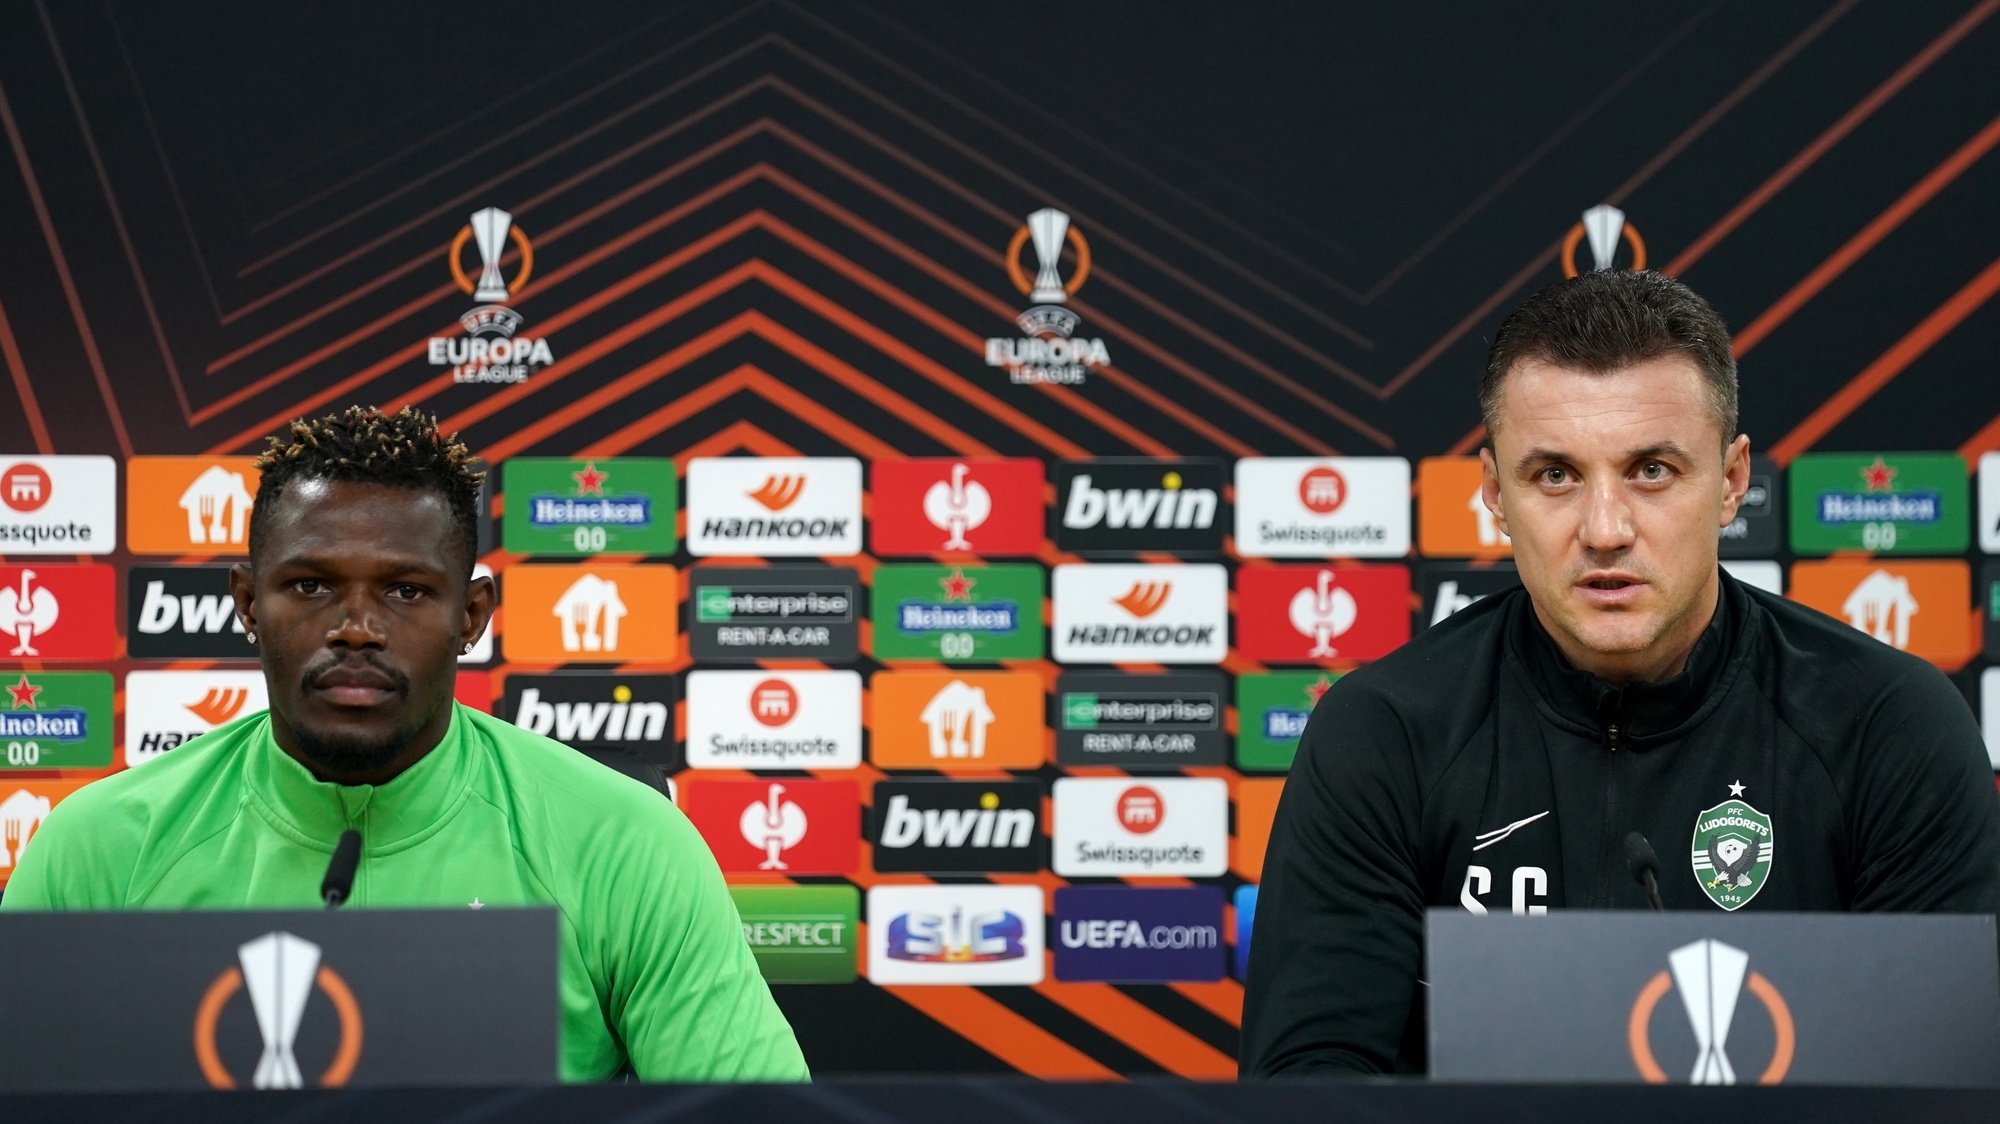 Ludogorets conferência de imprensa no âmbito da liga europa